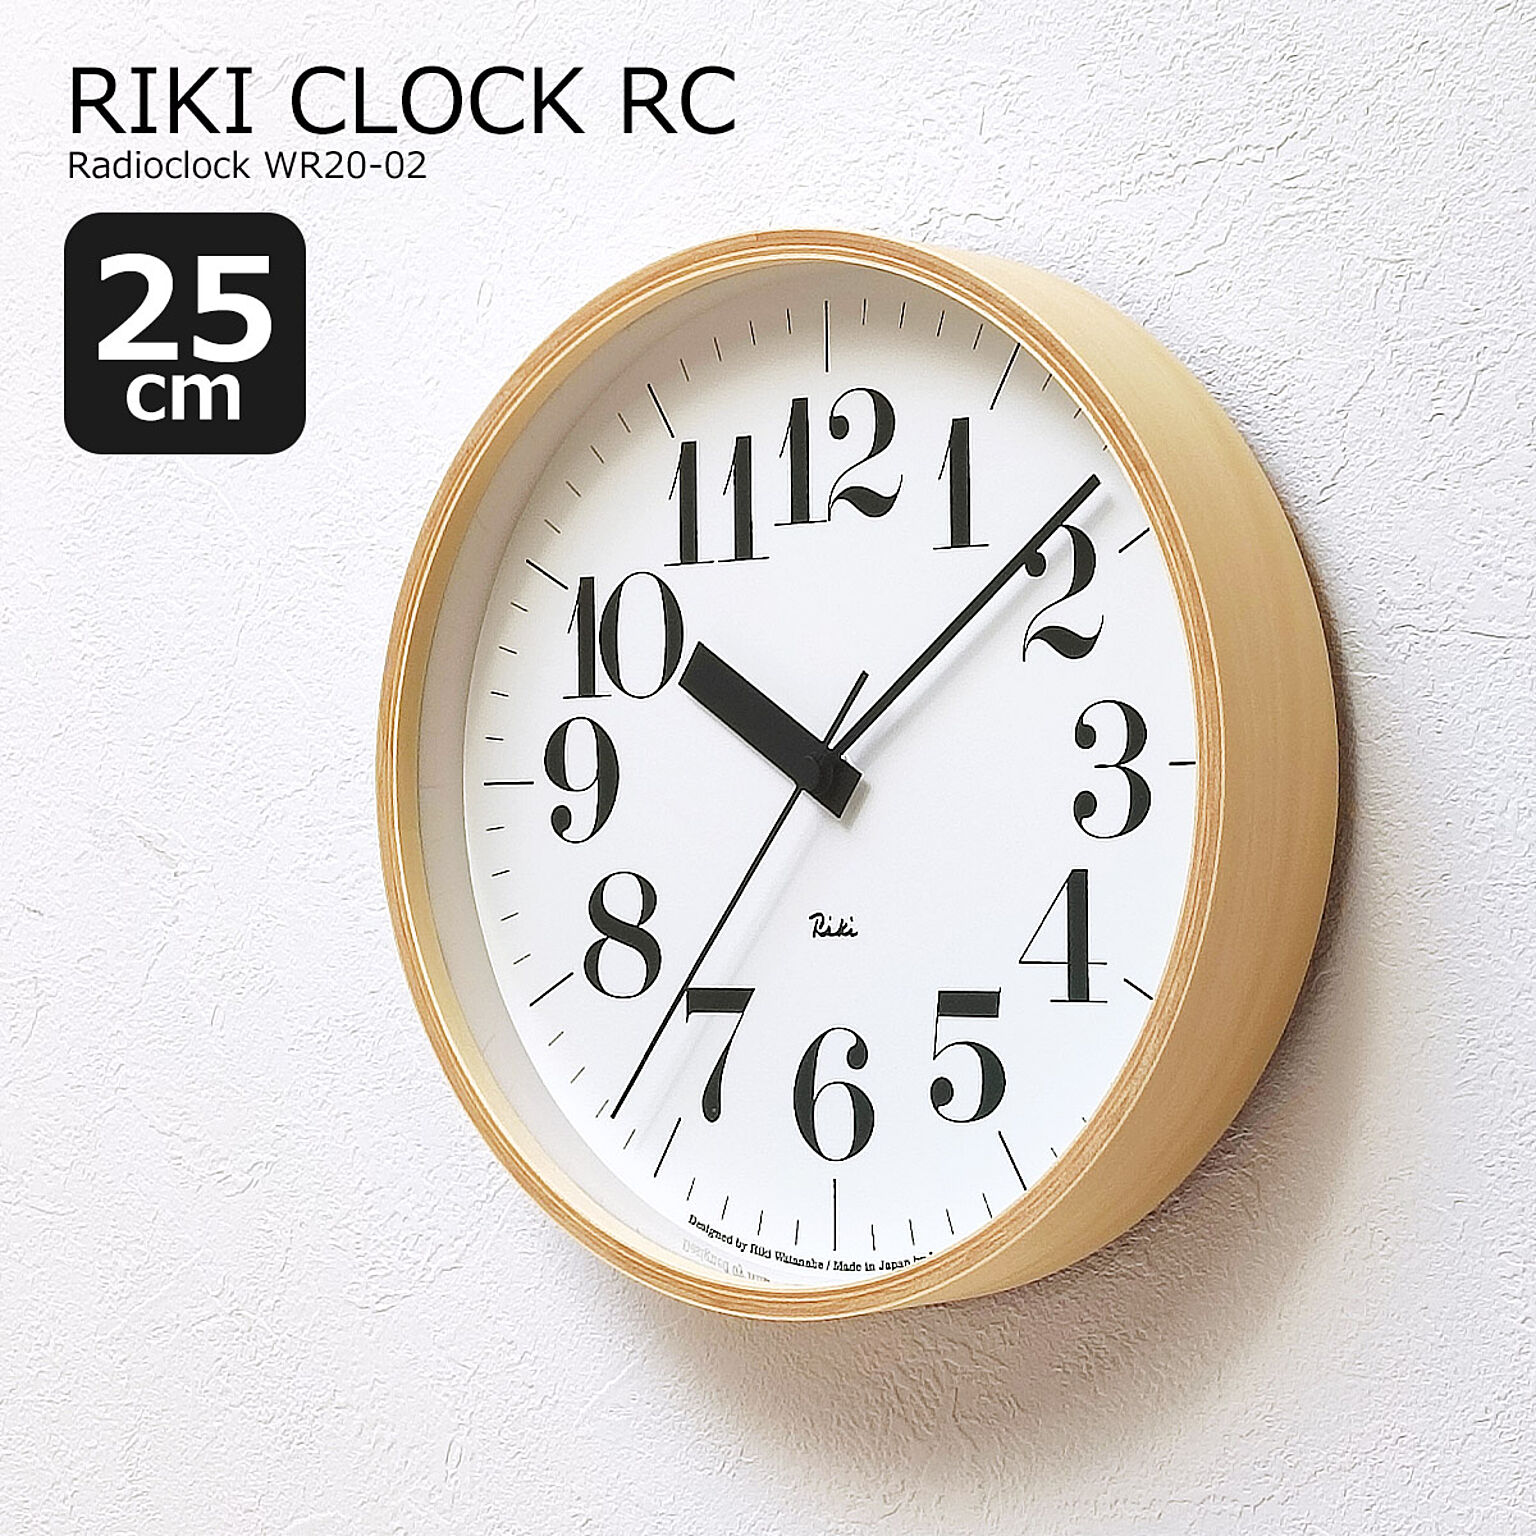 掛け時計 電波時計 おしゃれ 壁掛け時計 時計 電波 北欧 RIKI CLOCK RC リキ クロック アールシー 25cm WR20-02 木製 モダン シンプル ナチュラル リビング ダイニング 